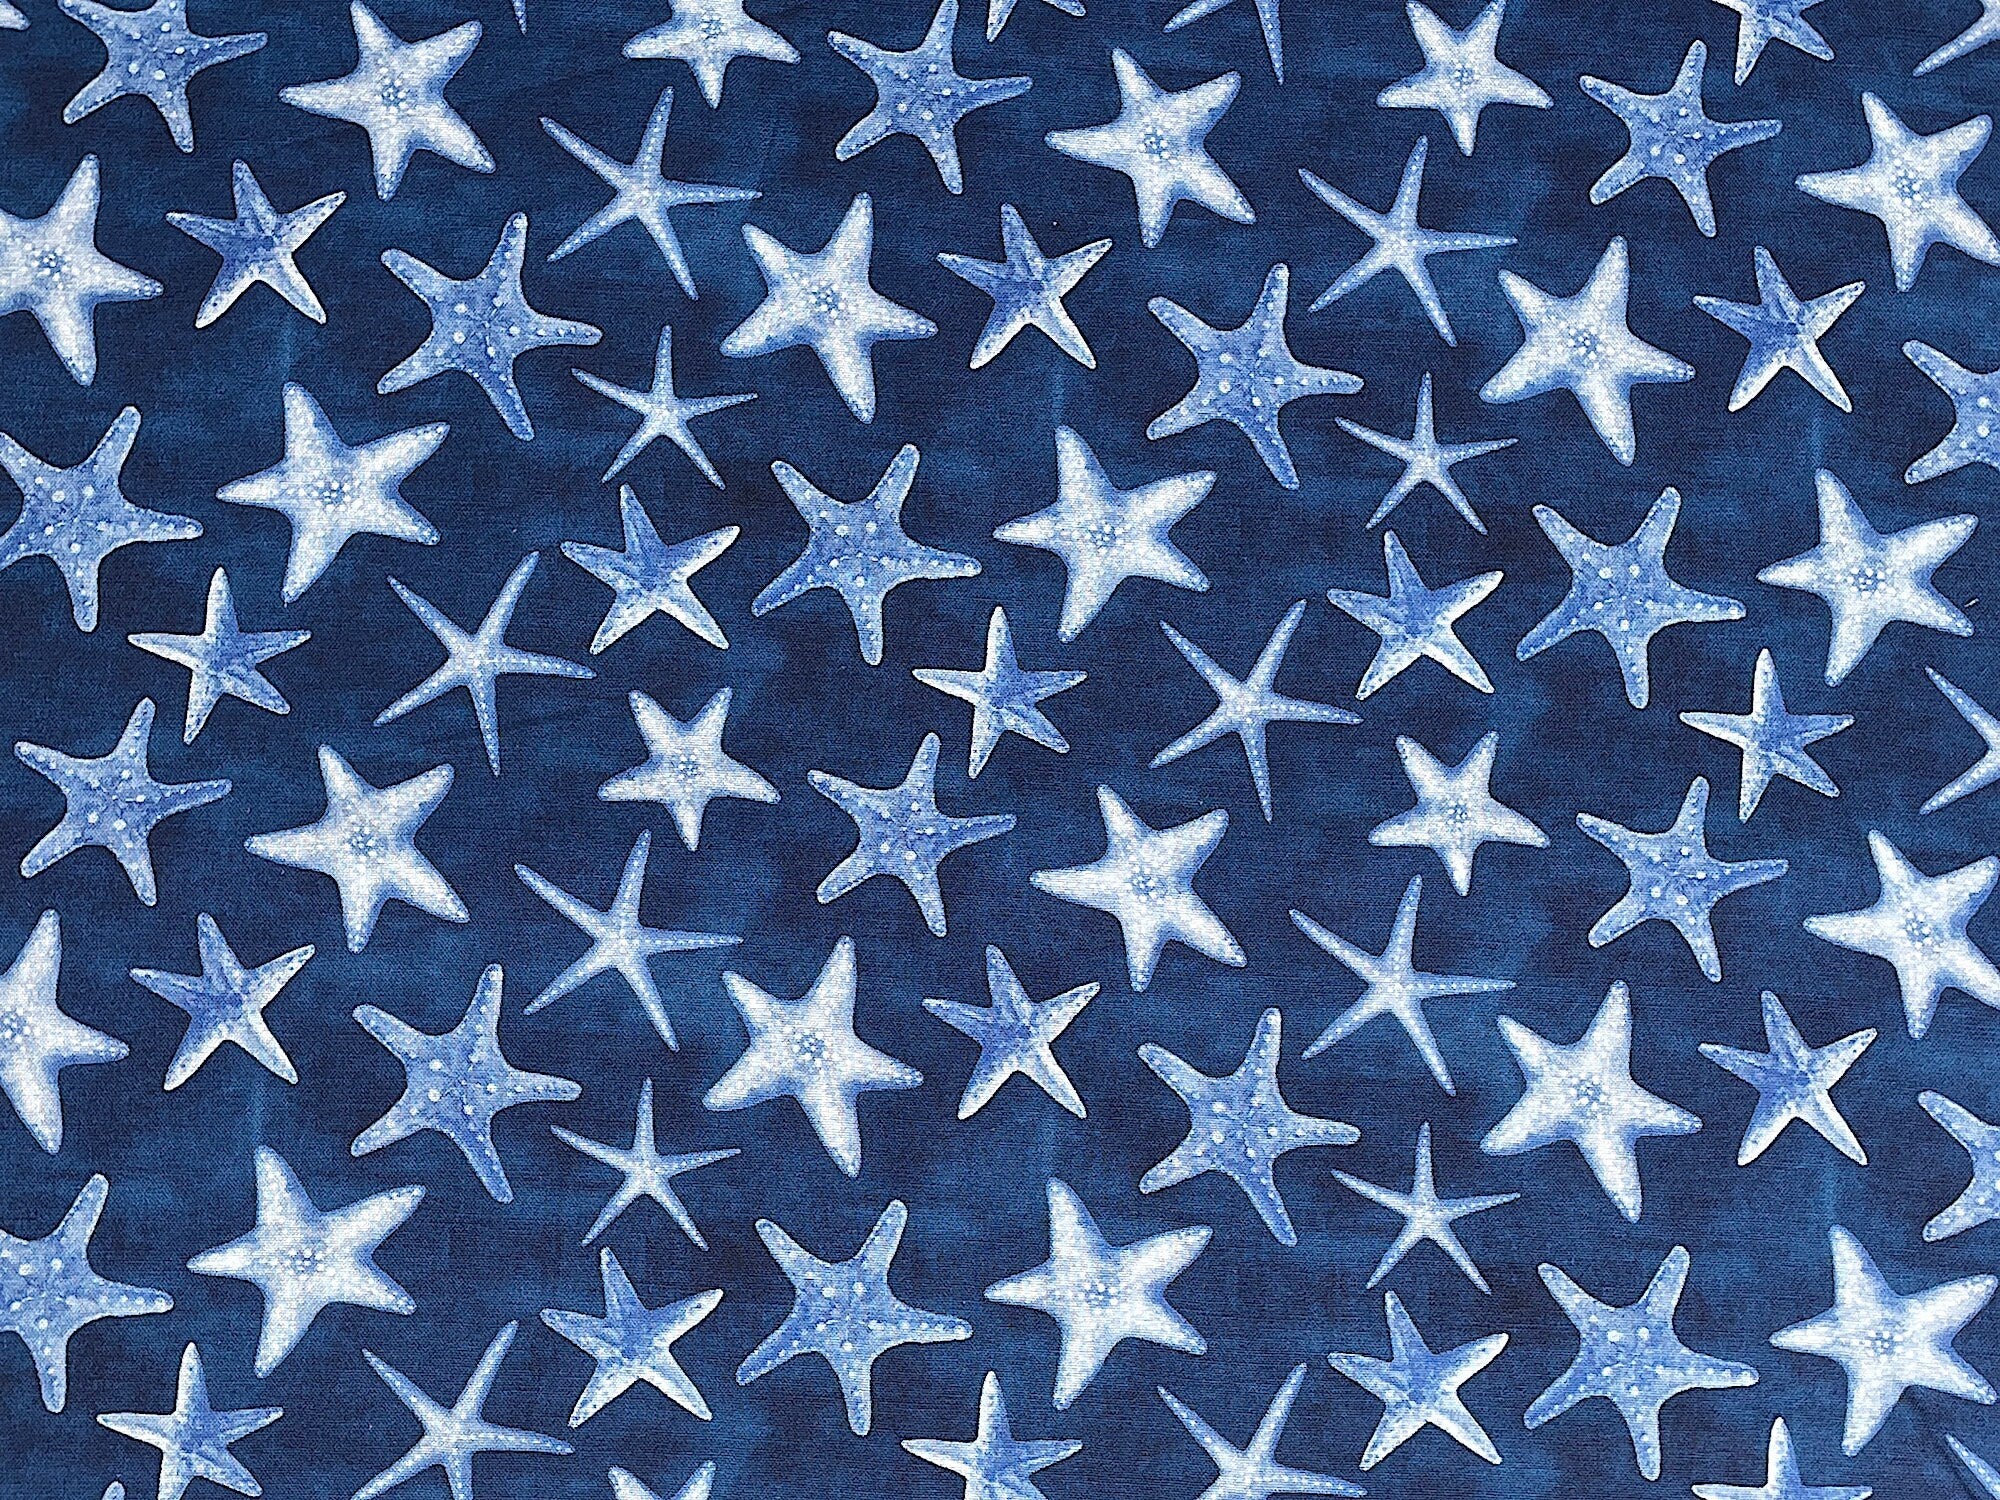 Starfish on a dark blue background.